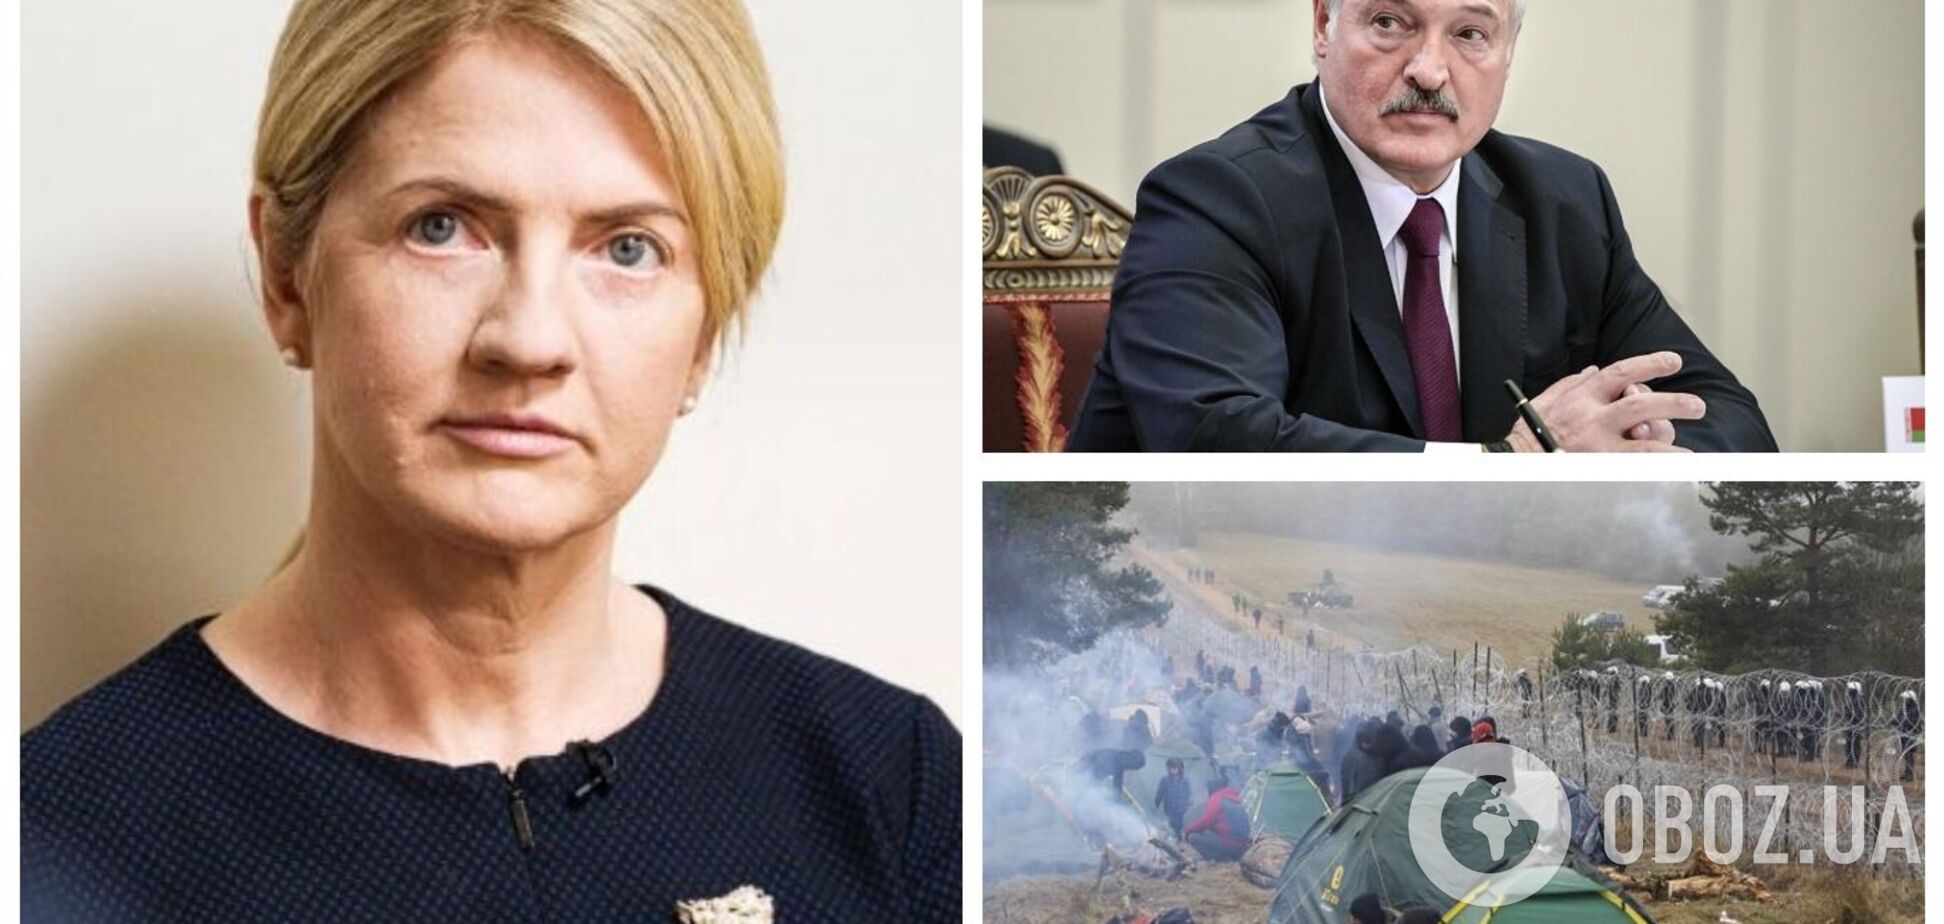 Лукашенко потребовал снятия санкций в обмен на разрешение кризиса с мигрантами, – глава МИД Эстонии